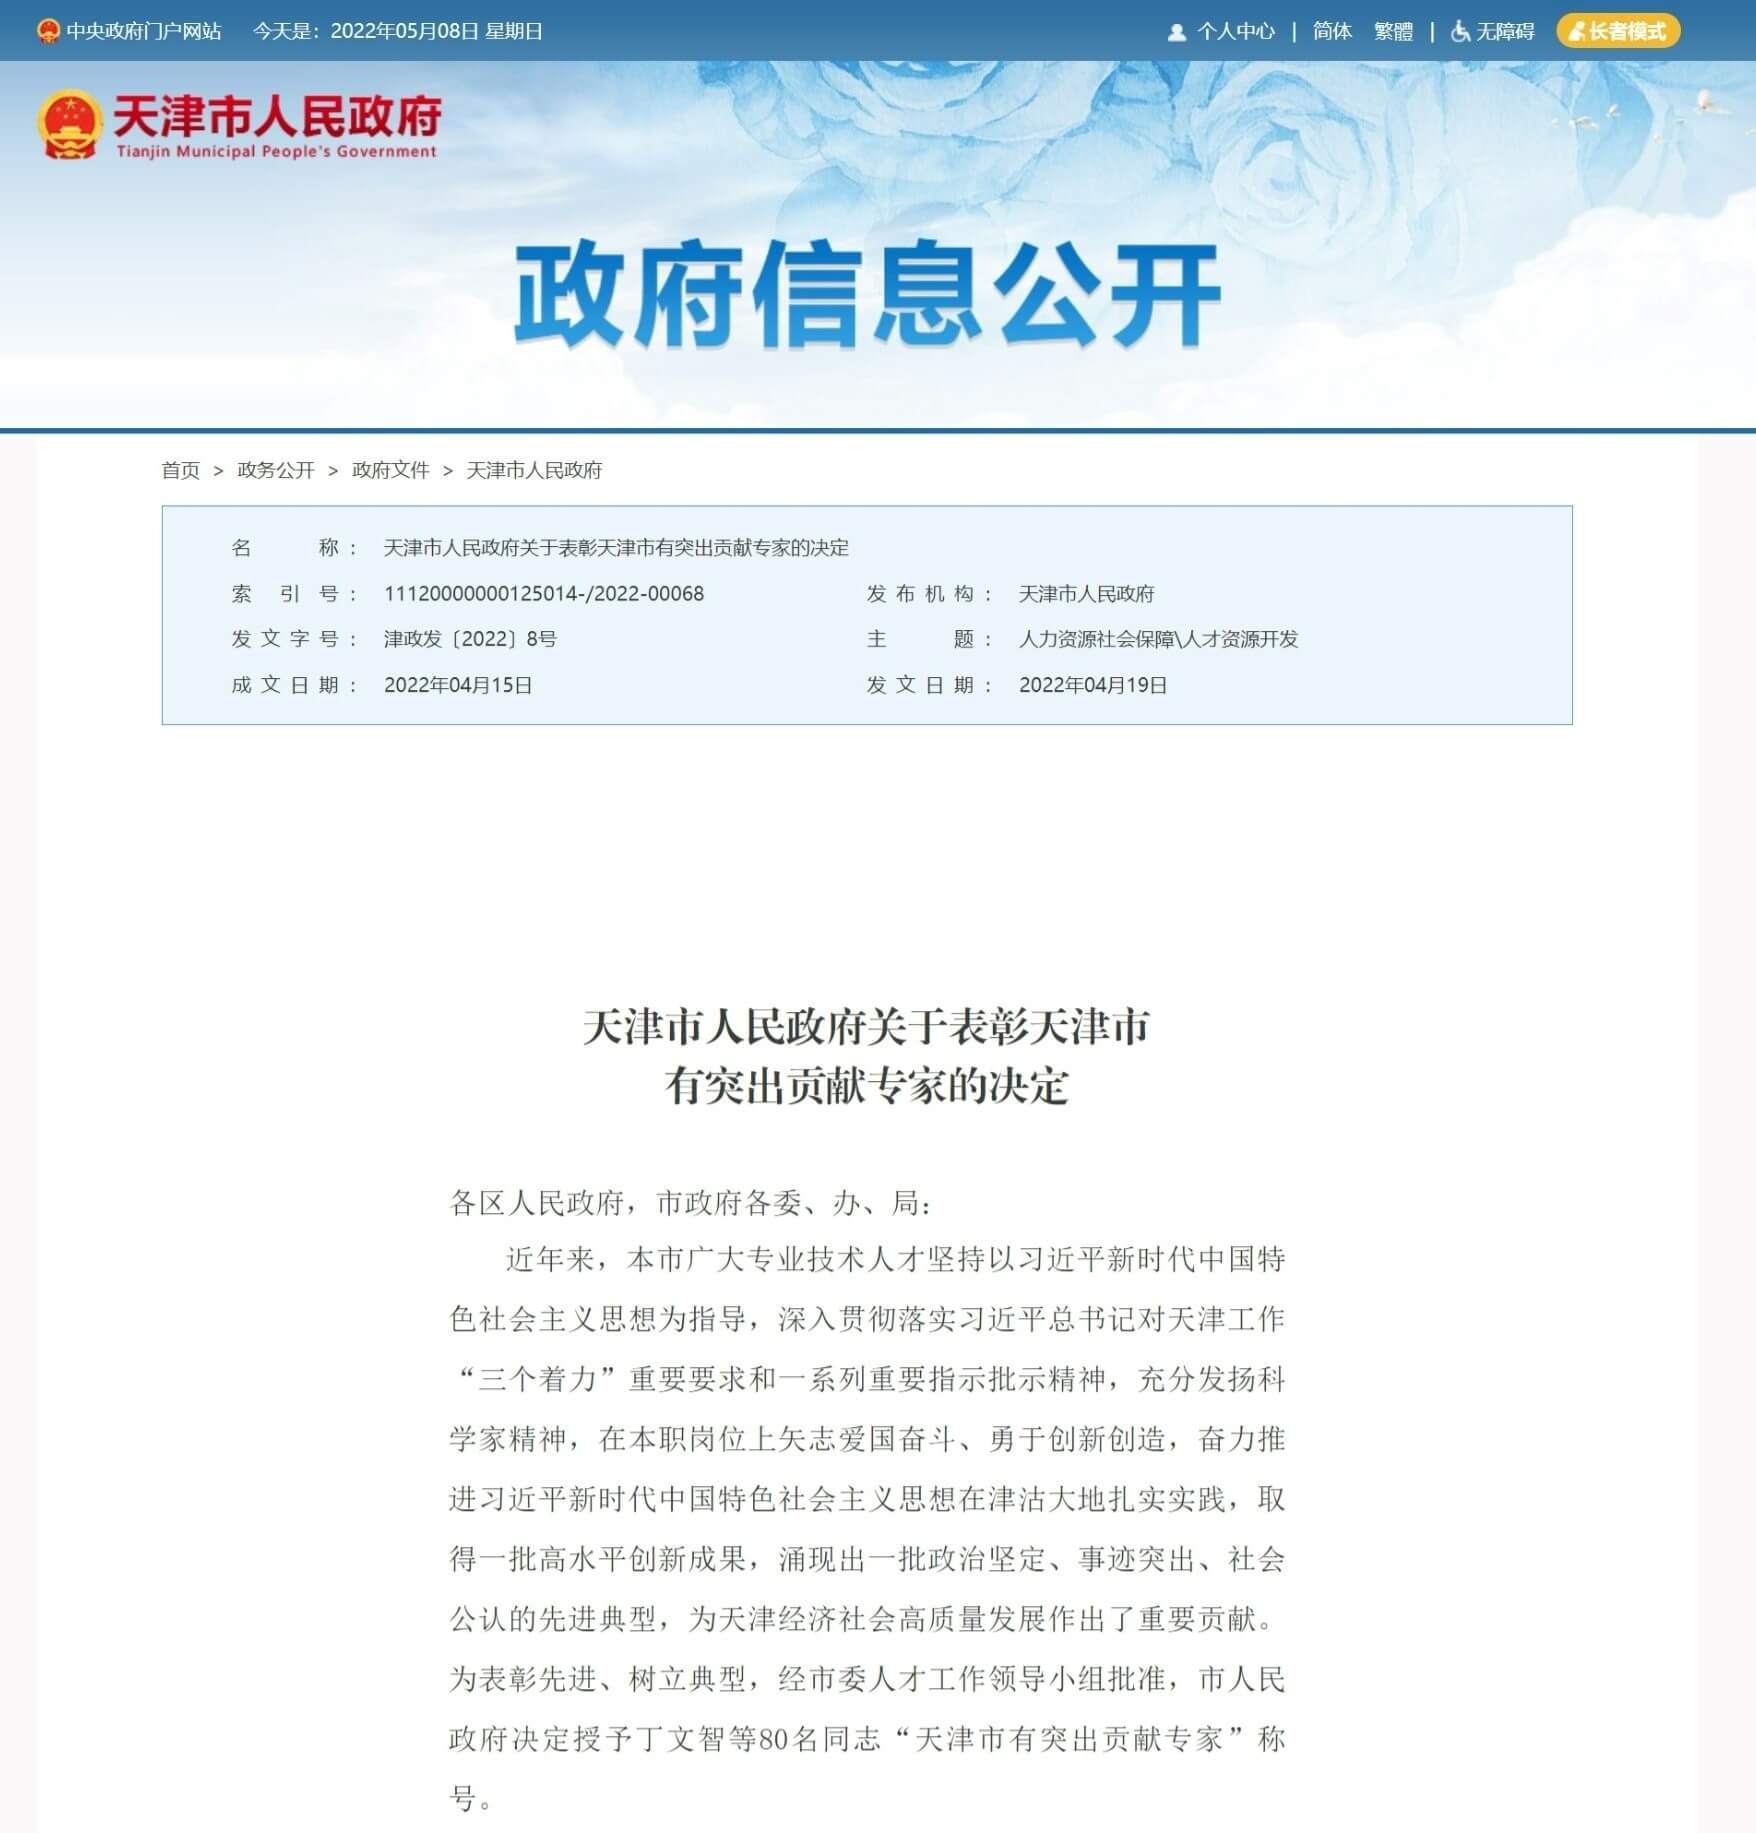 云账户与天津社会科学院开启全面战略合作 共建云账户研究中心 服务天津高质量发展 1051